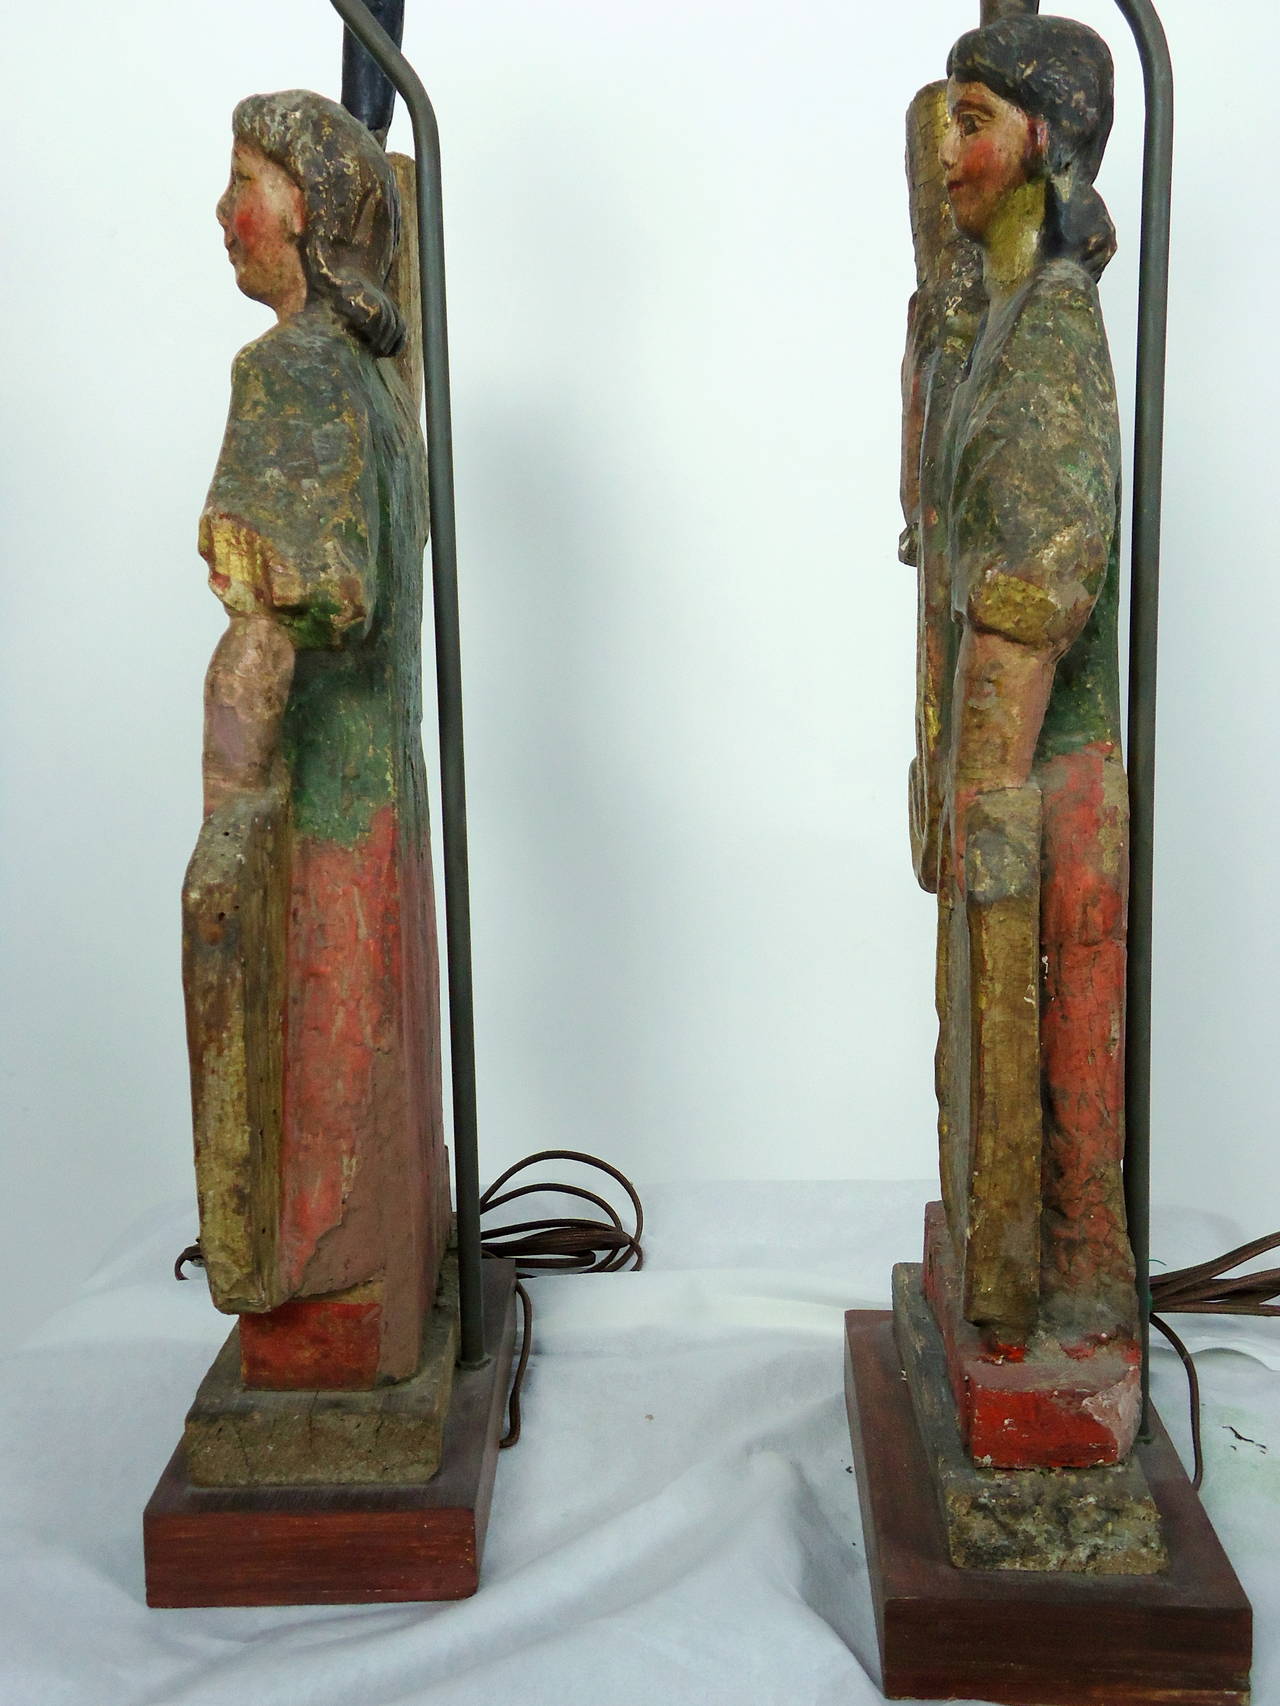 Insolites chandeliers figuratifs en bois polychrome sculptés au Mexique entre la fin du XVIIIe et le milieu du XIXe siècle, convertis en lampes de table, vers 1940.
Les figures ont fait l'objet de restaurations mineures au cours du siècle et demi